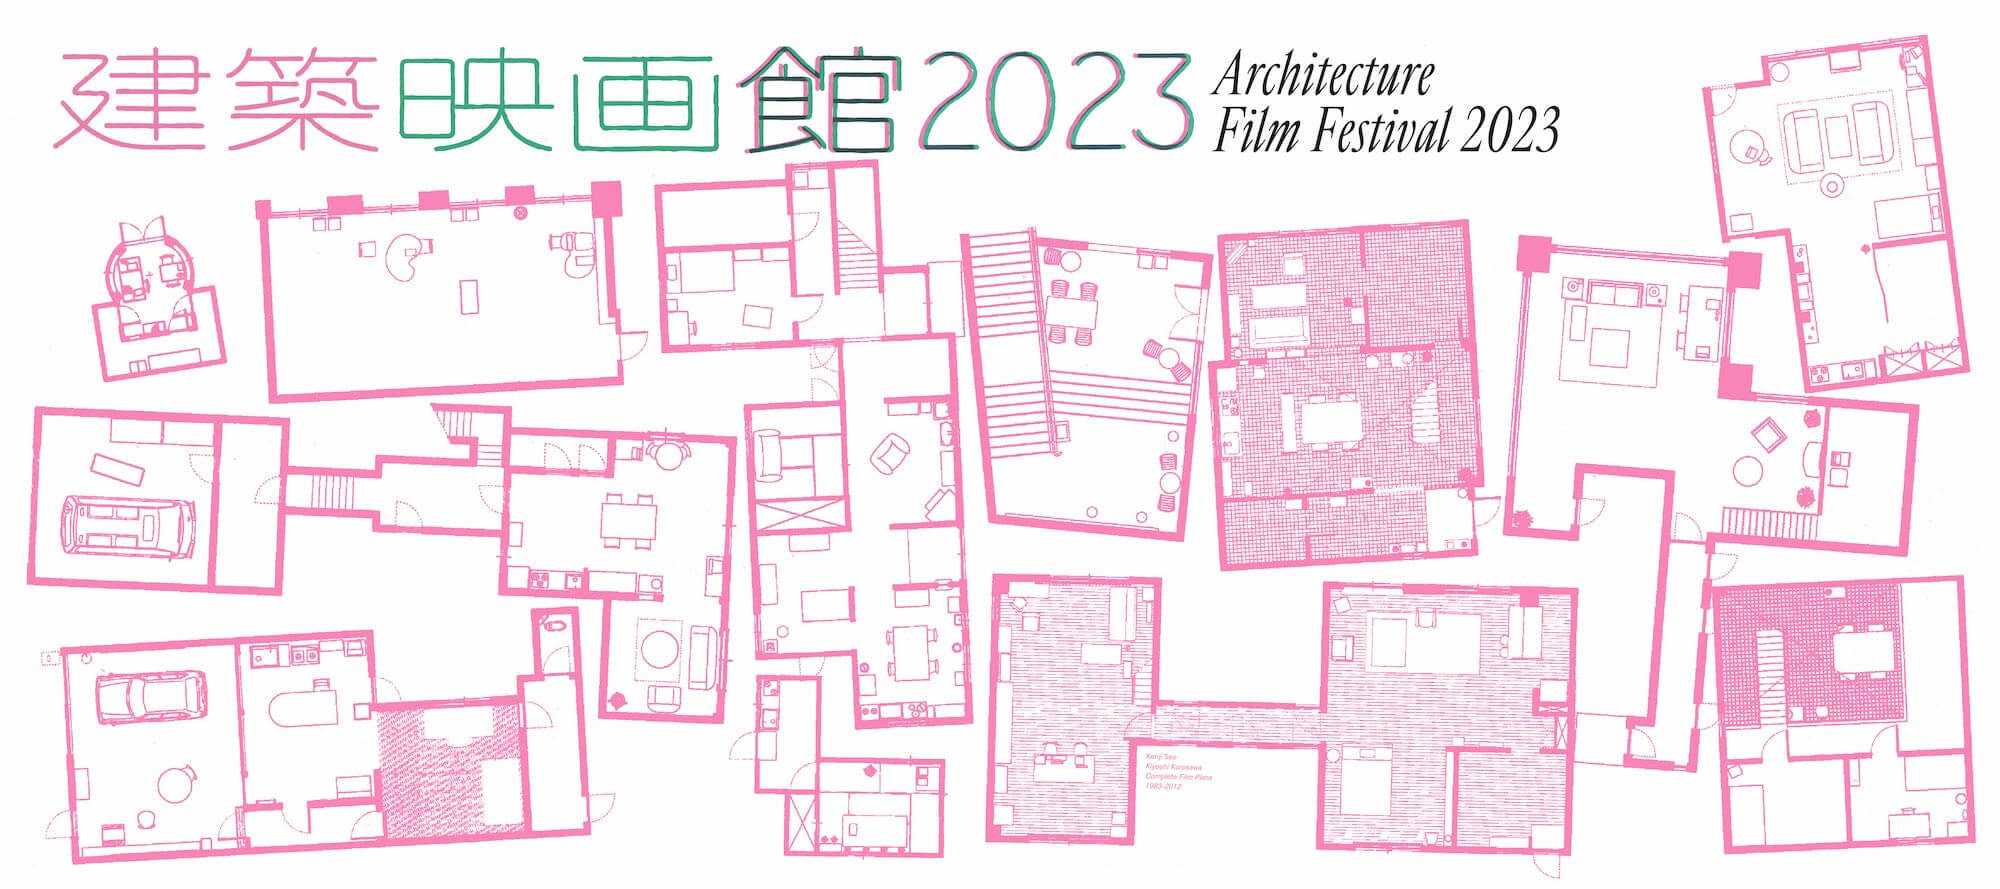 建築映画館 2023 Architecture Film Festival 2023